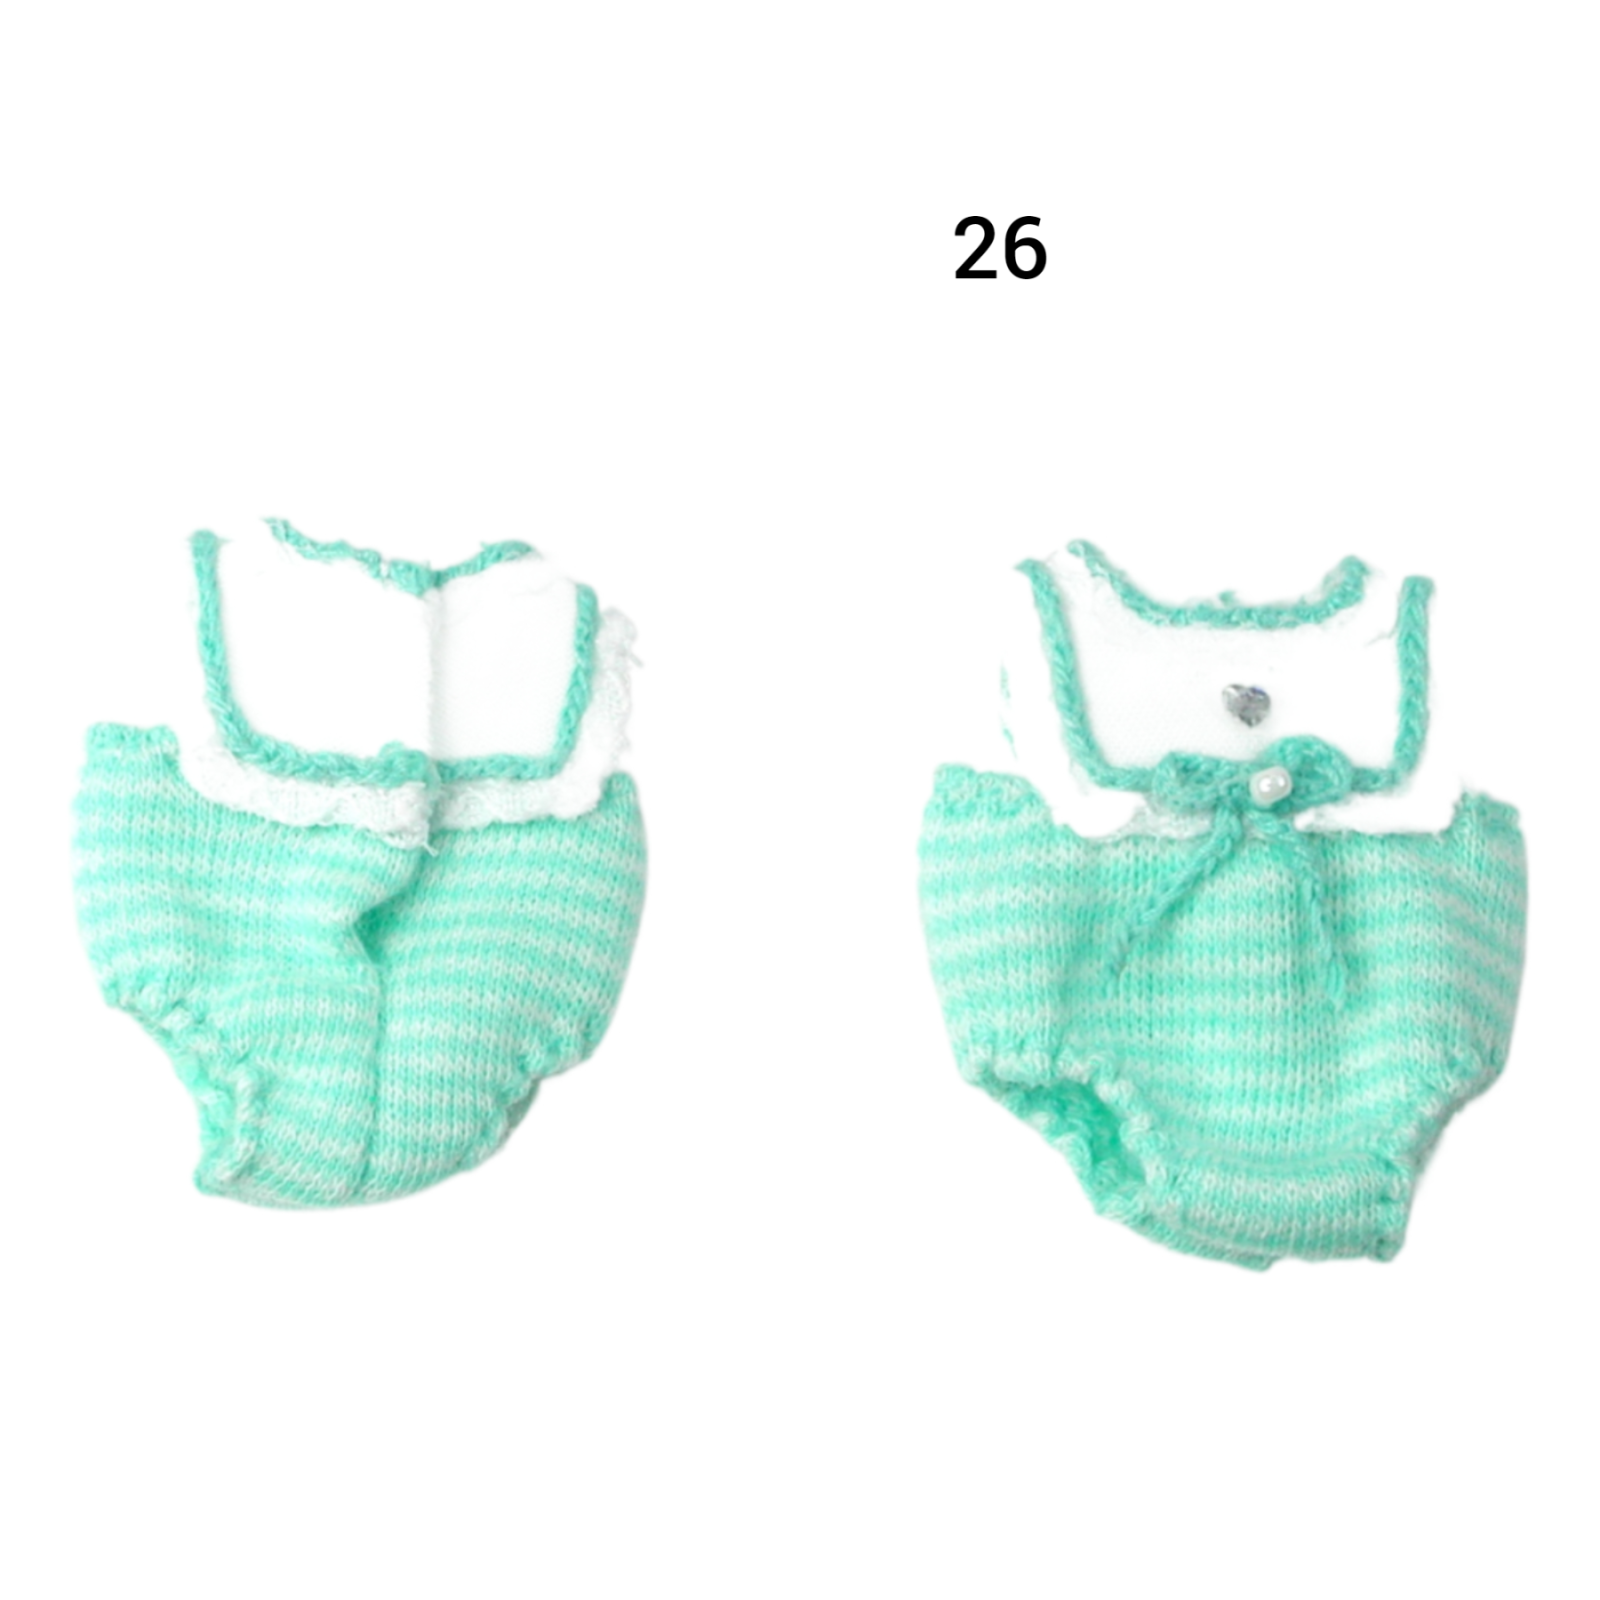 Pumphose Spielhose für das Baby Kleidung Maßstab 1:12 3